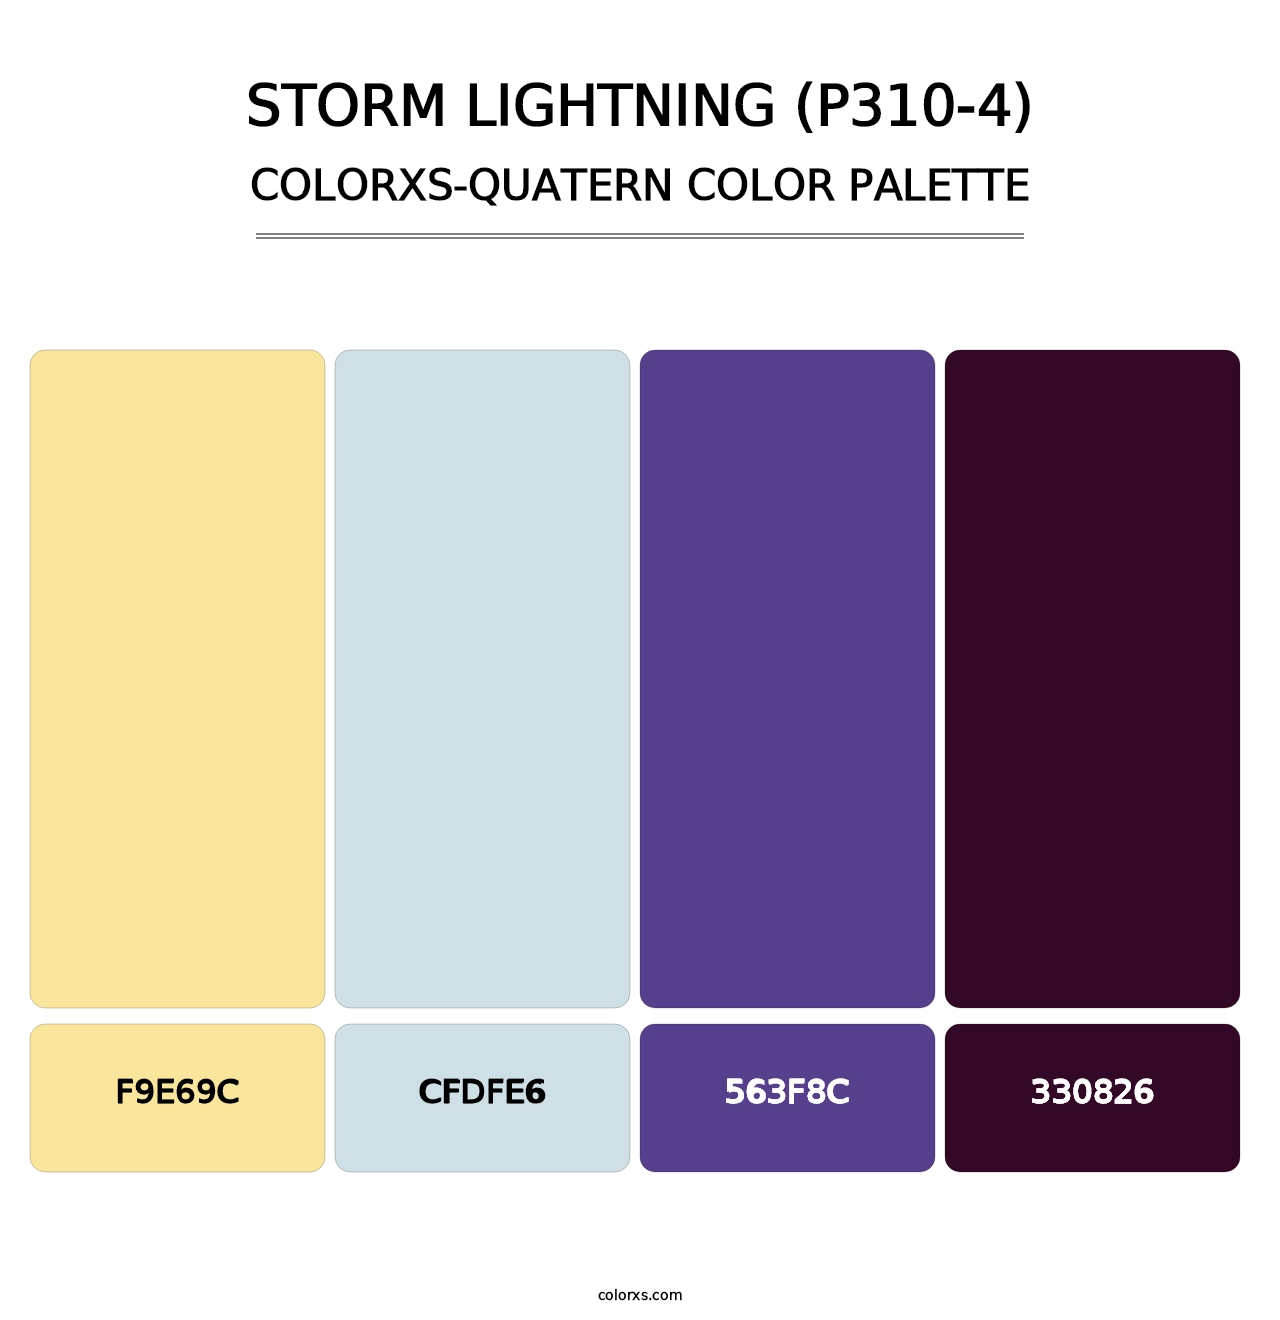 Storm Lightning (P310-4) - Colorxs Quatern Palette